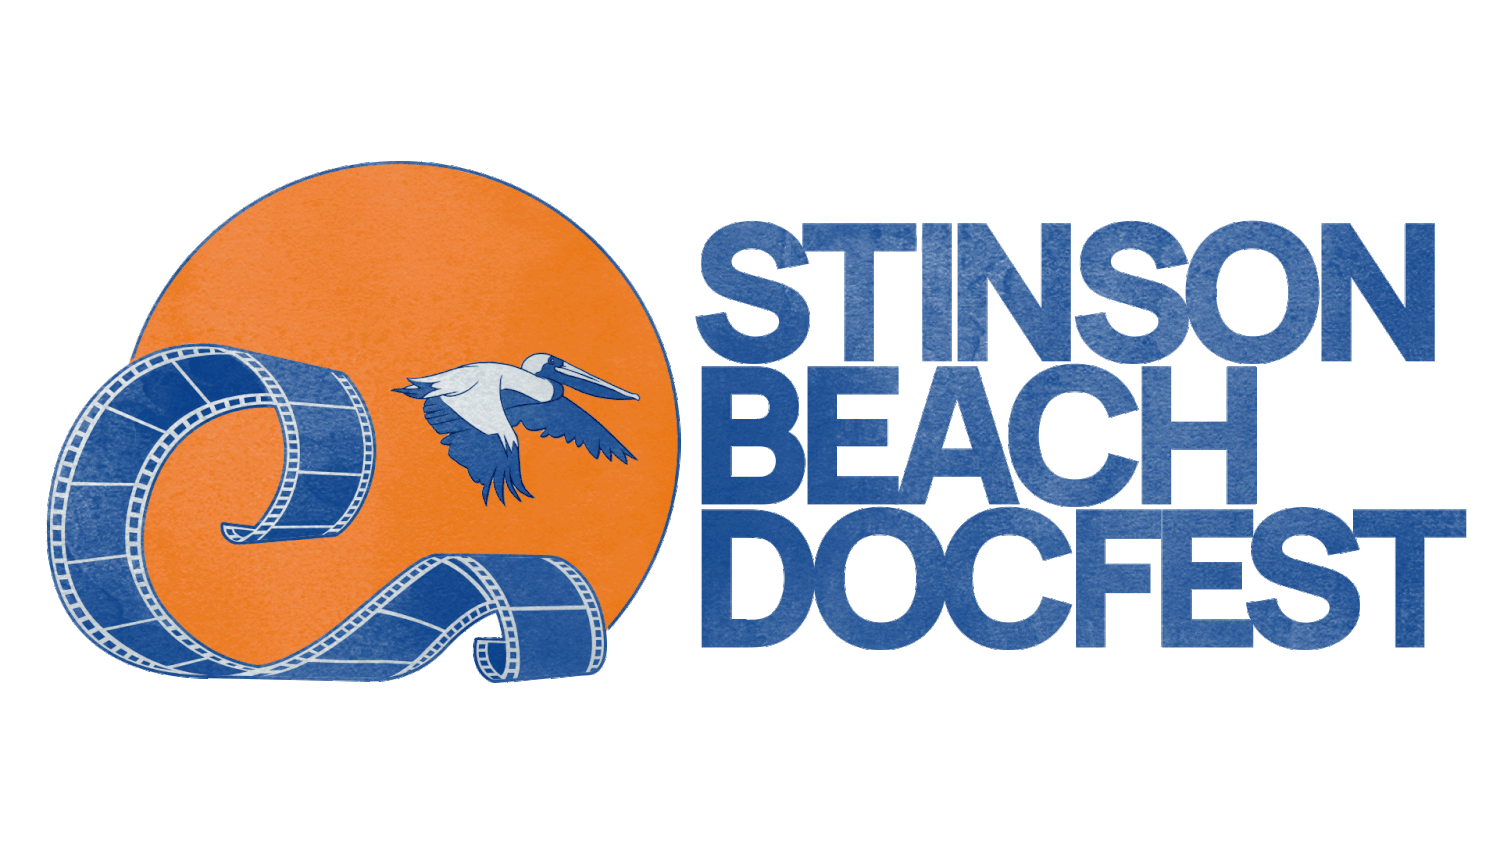 Stinson Beach DocFest